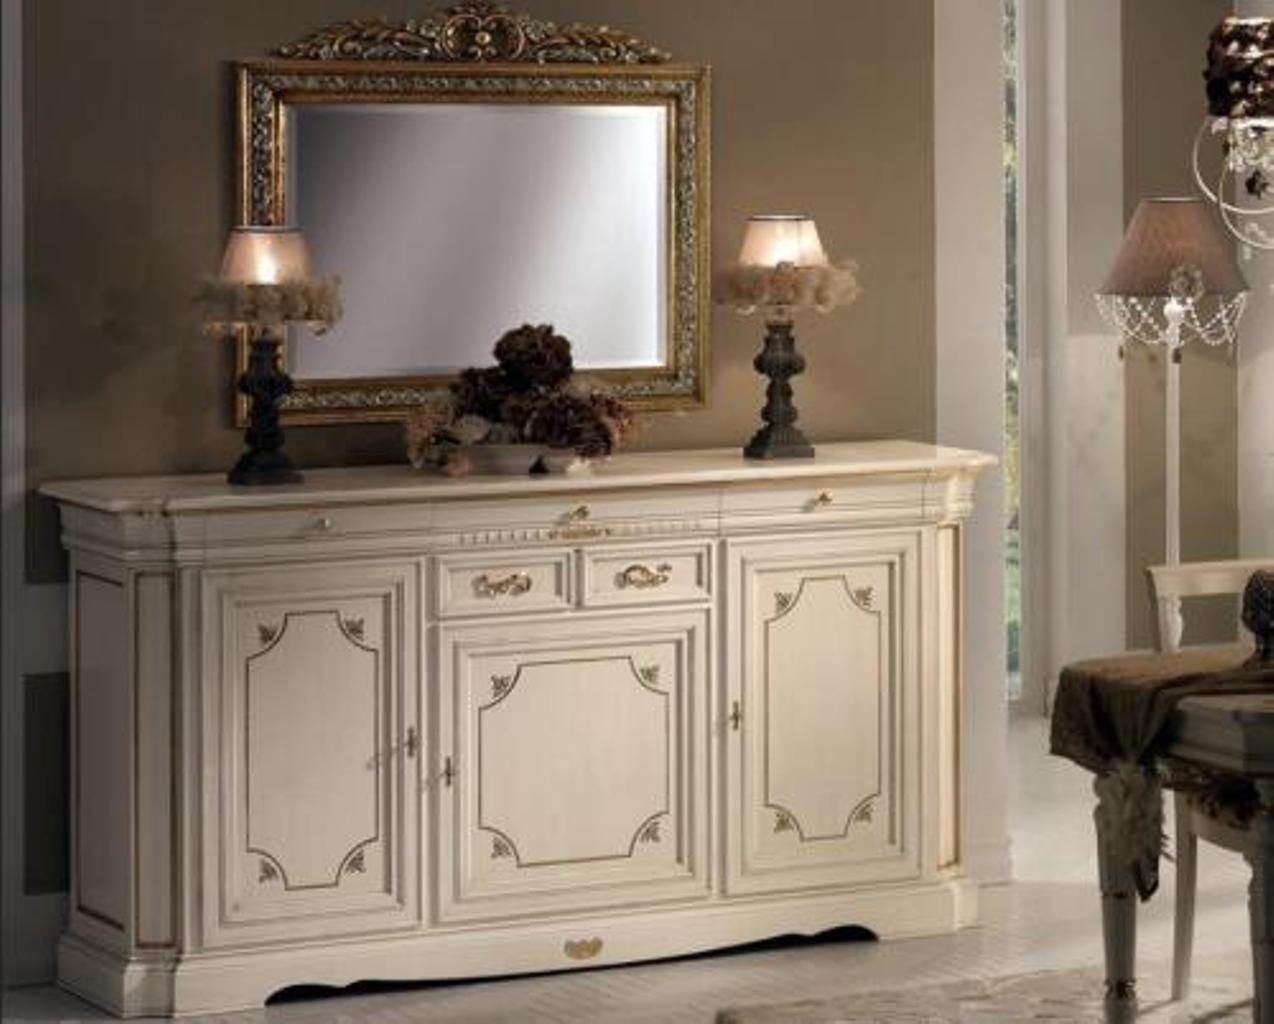 JVmoebel Anrichte, Design Kommode Möbel Sideboard Klassisch Luxus Italien